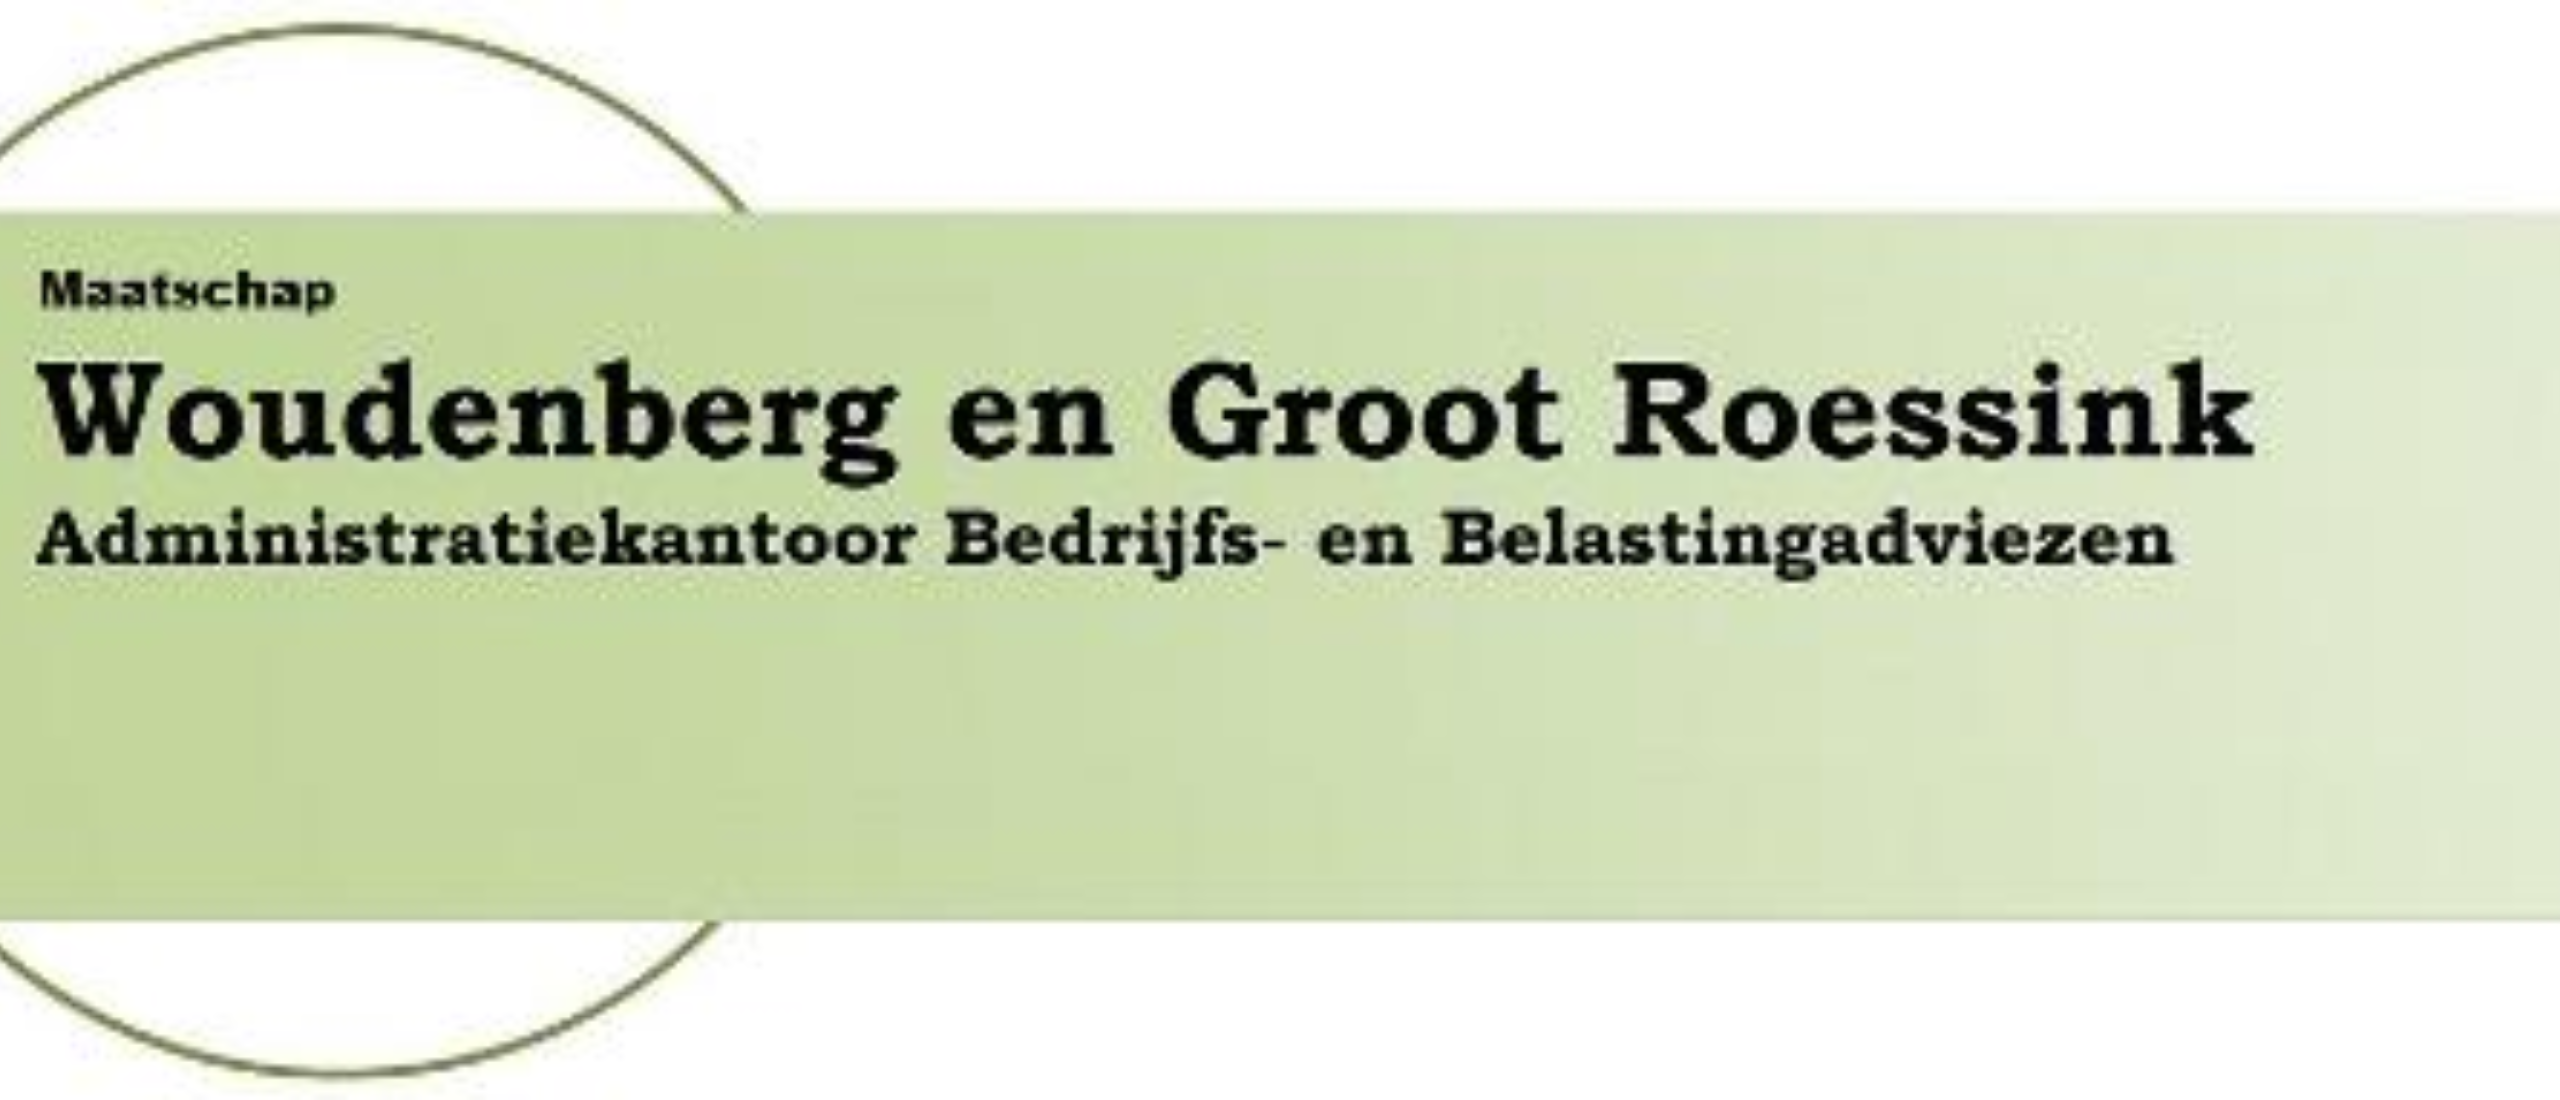 Maatschap Woudenberg en Groot Roessink: Uw Partner in Boekhouding en Belastingzaken